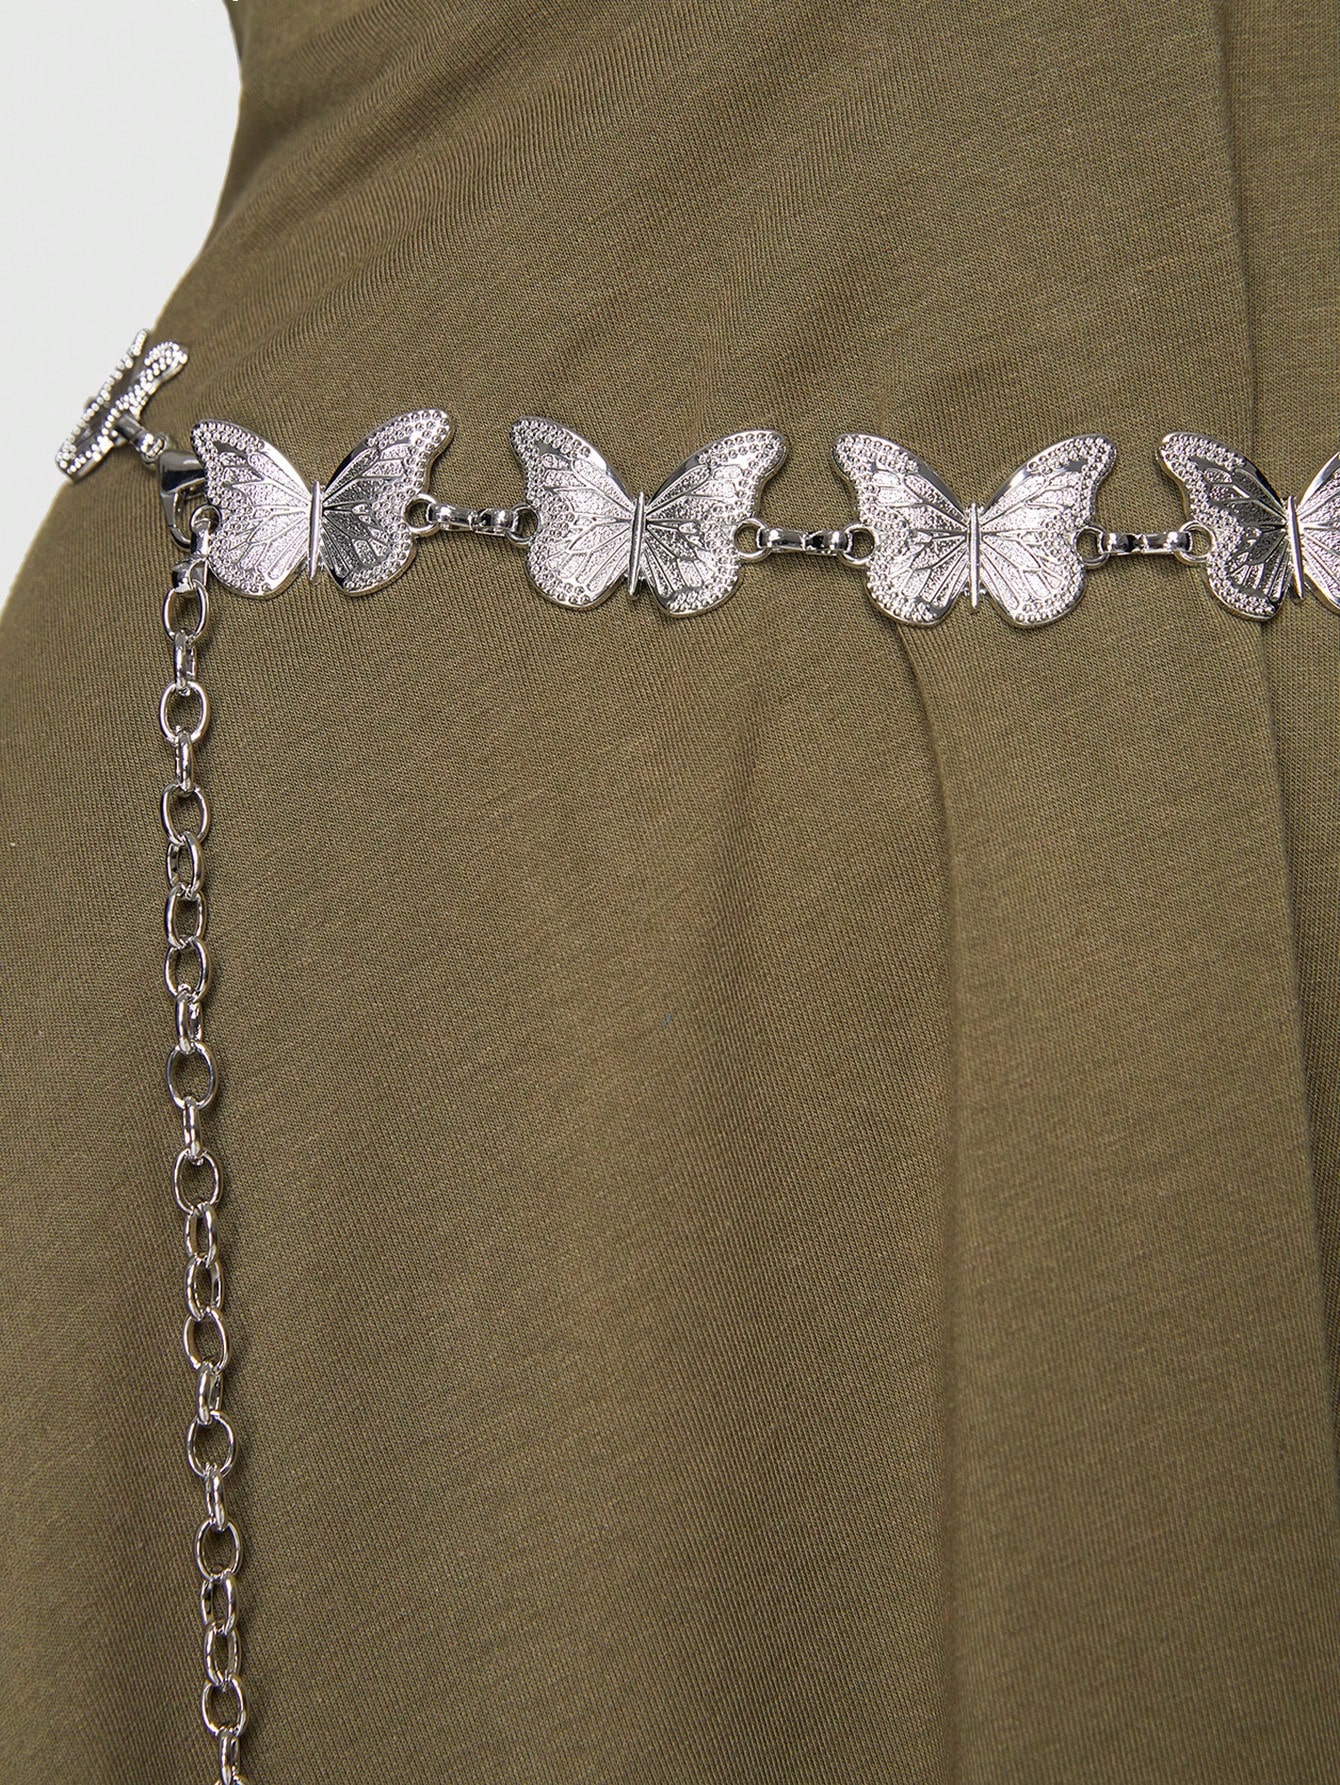 ROMWE Fairycore 1шт женский пояс-цепочка с декором в виде бабочки, черный